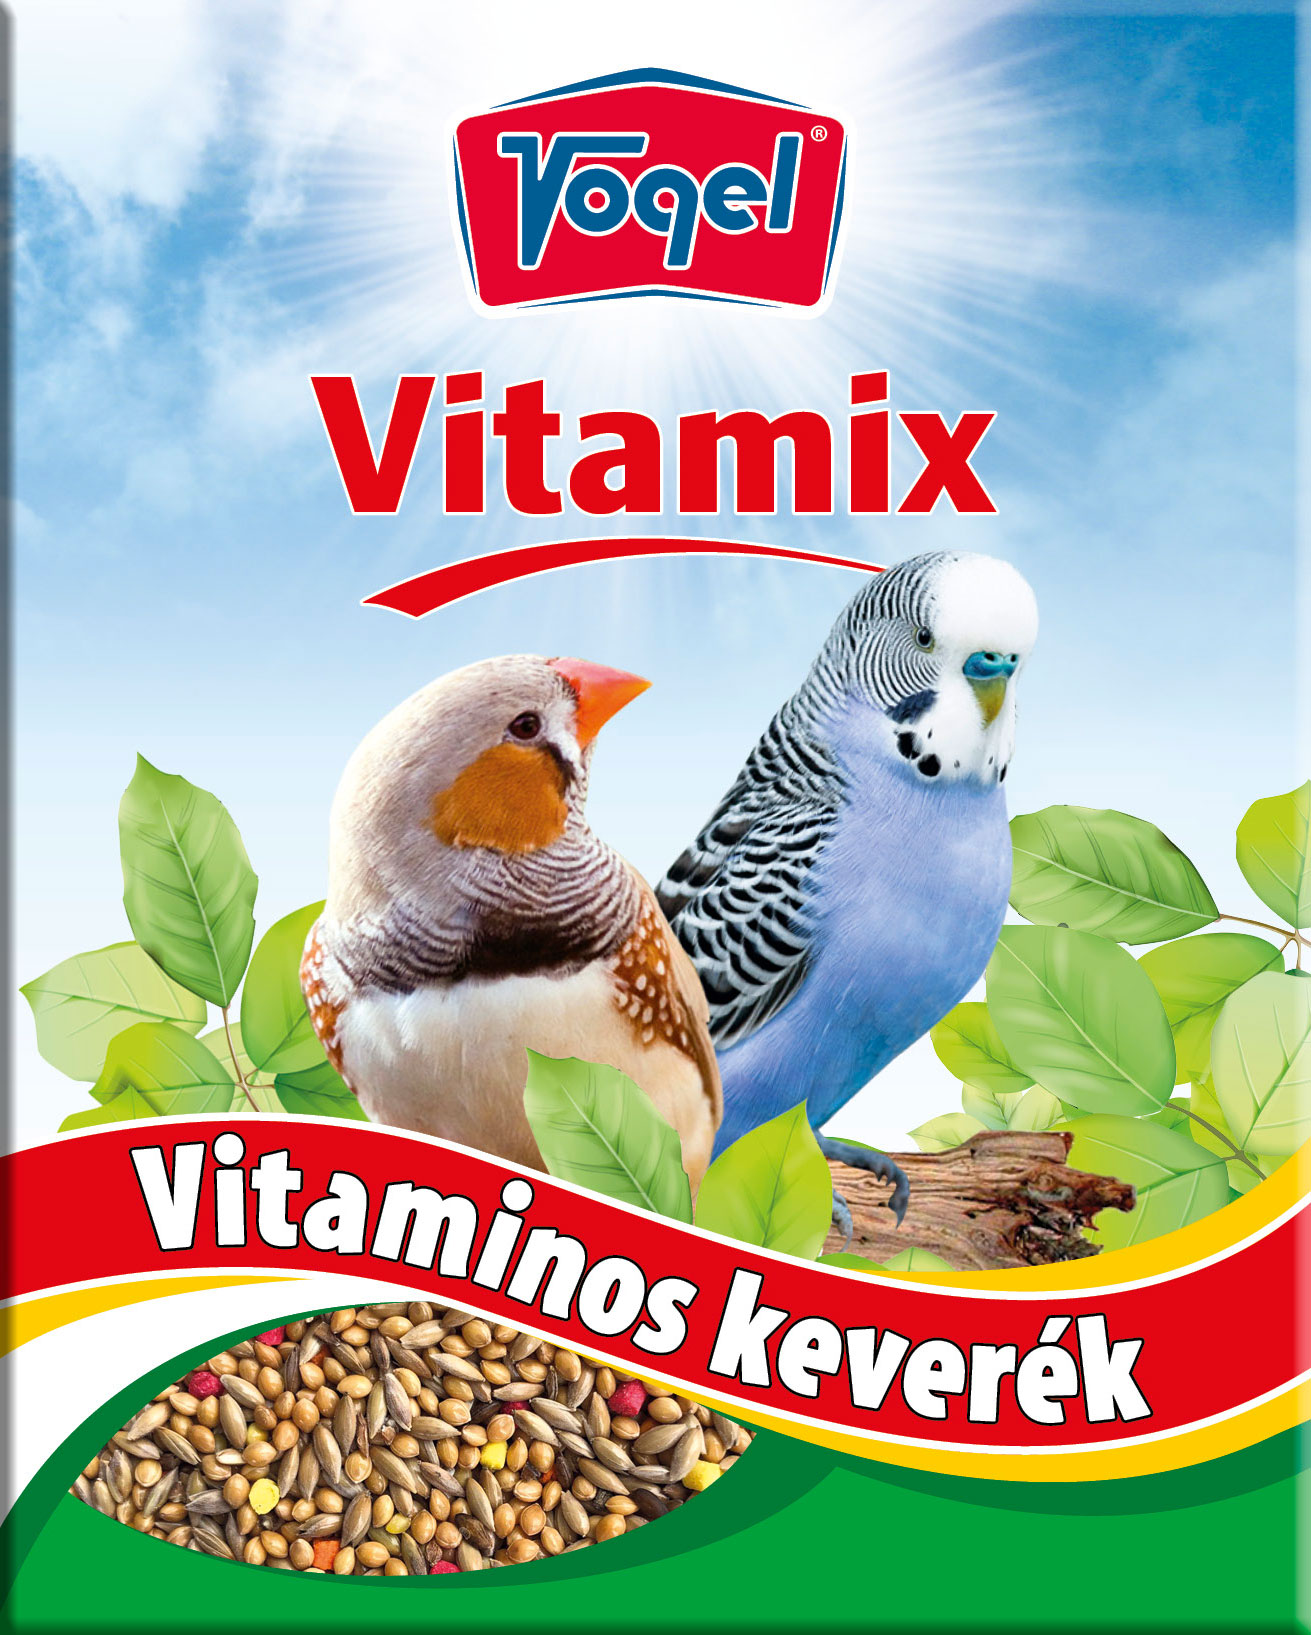 Vogel Vitamix vitamin 50 g